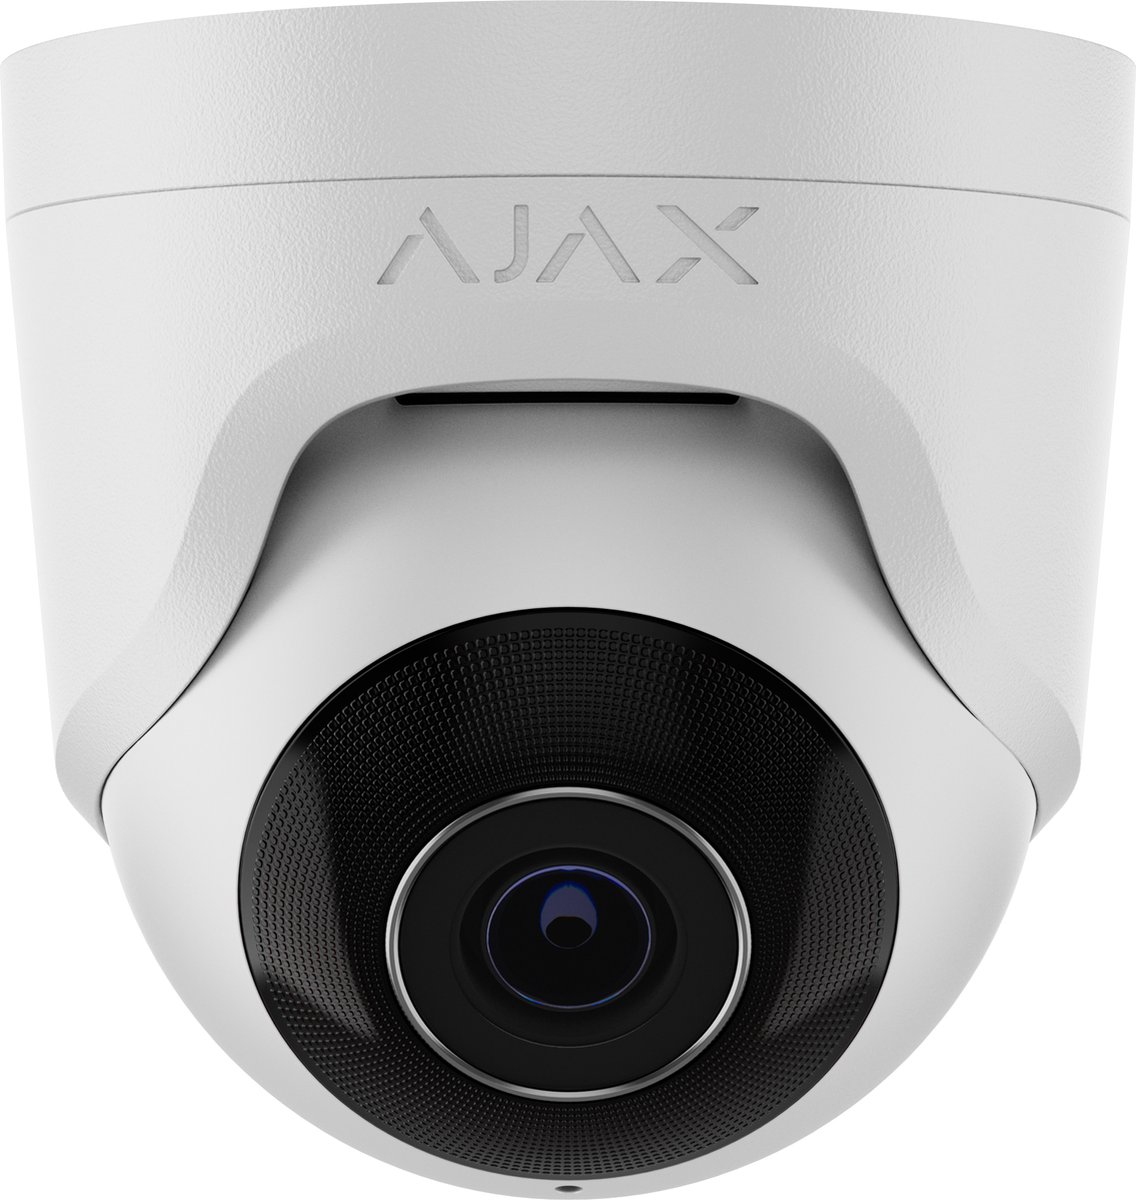 Ajax TurretCam 5MP Lens 4.0 Wit